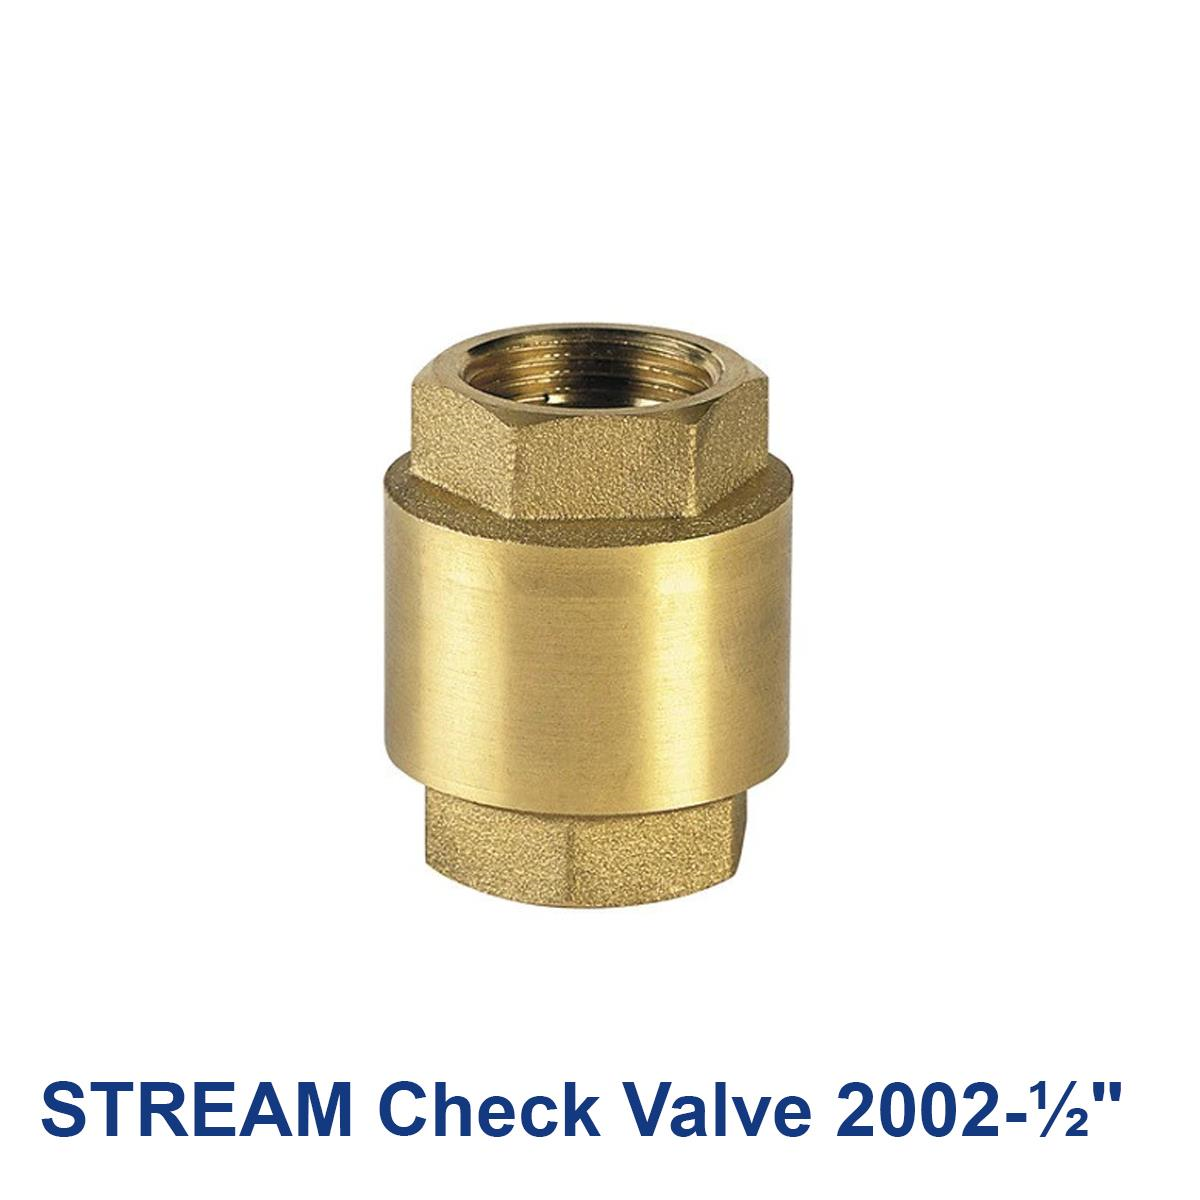 STREAM-Check-Valve-2002-½